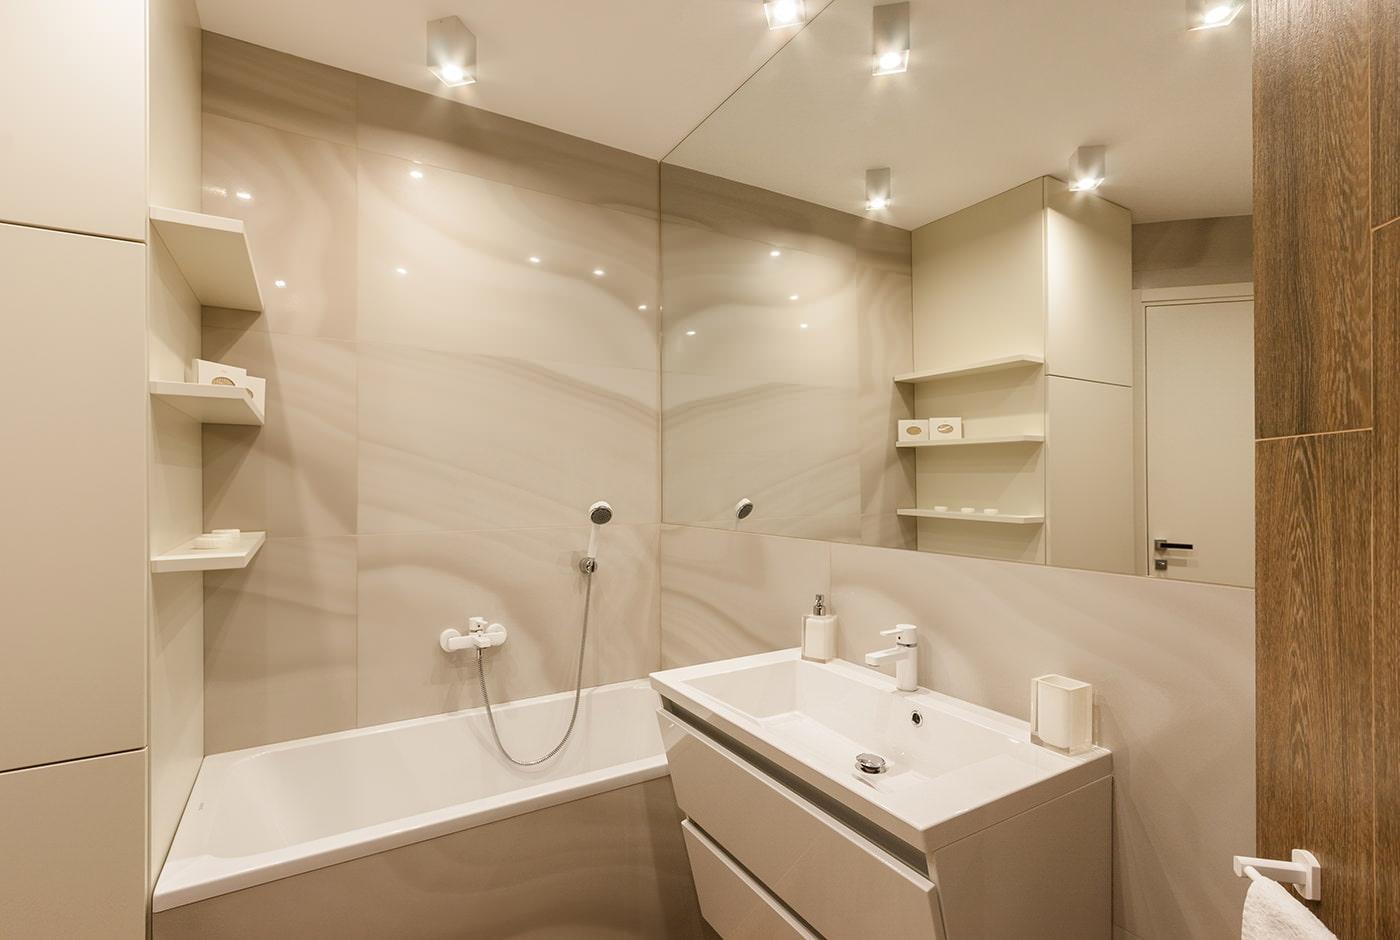 освещение в маленькой ванной комнате фото примеры